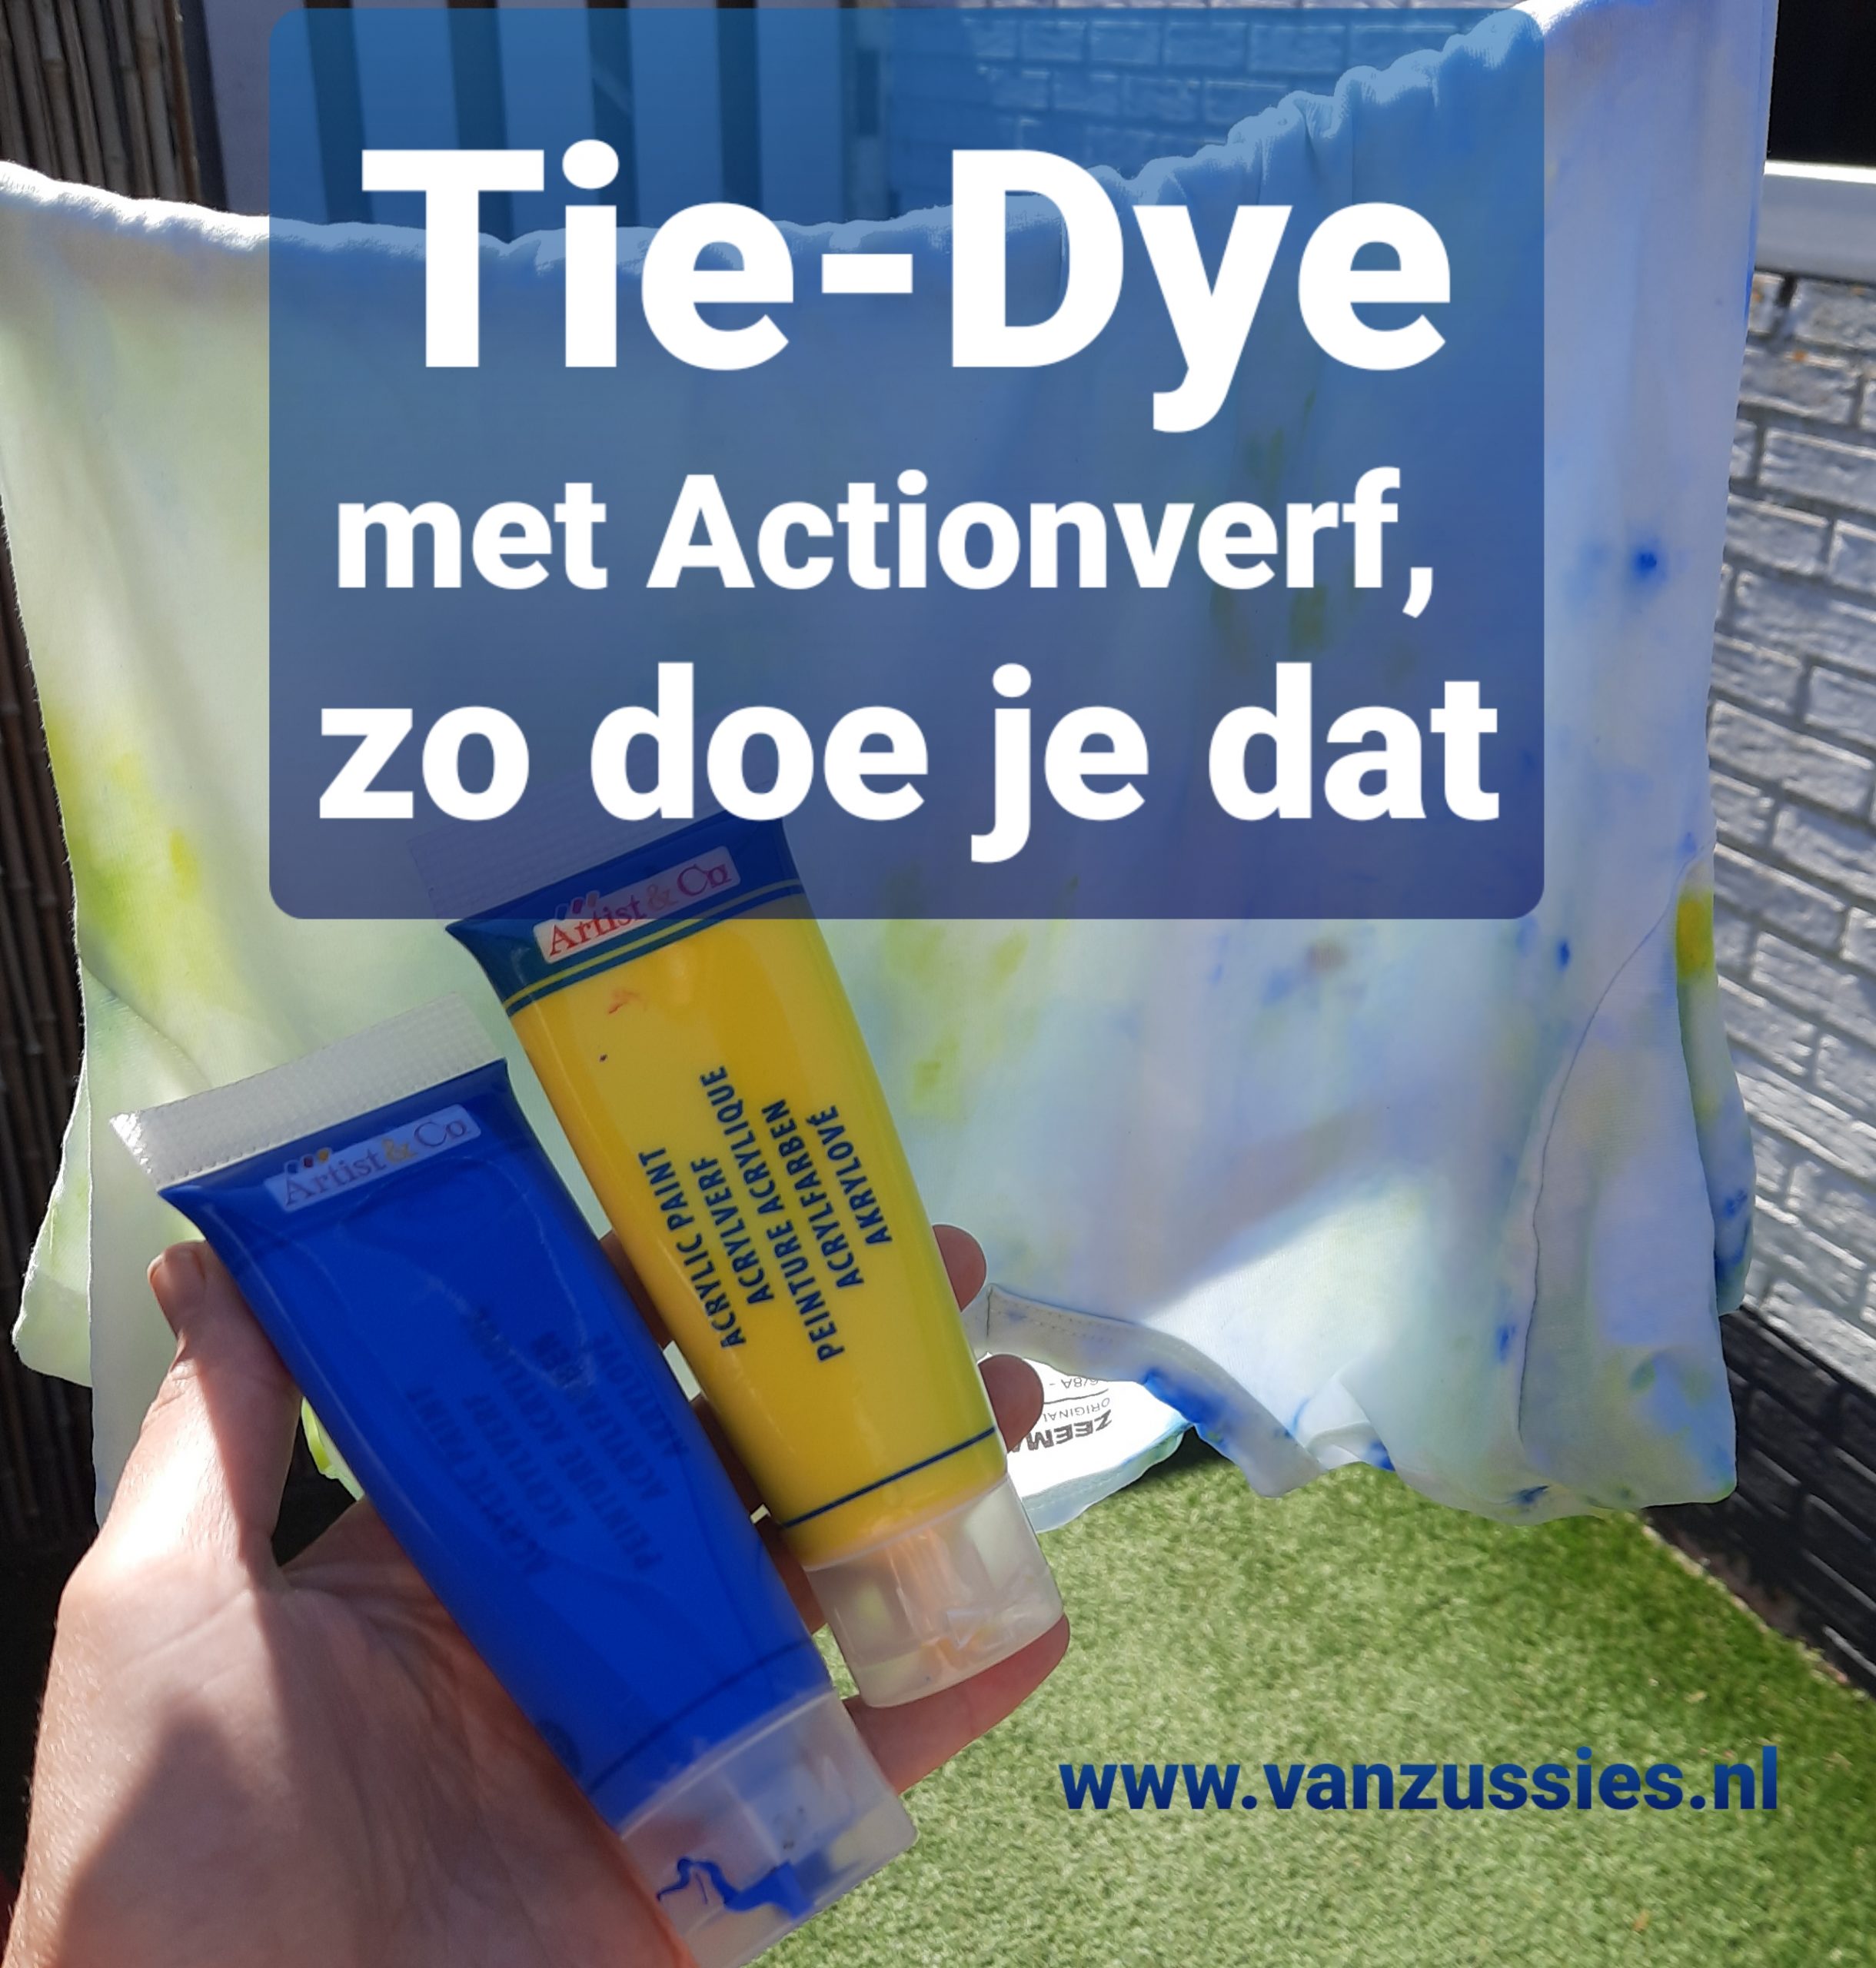 Tie-Dye maken met Action verf! Een snelle how-to! - VanZussies